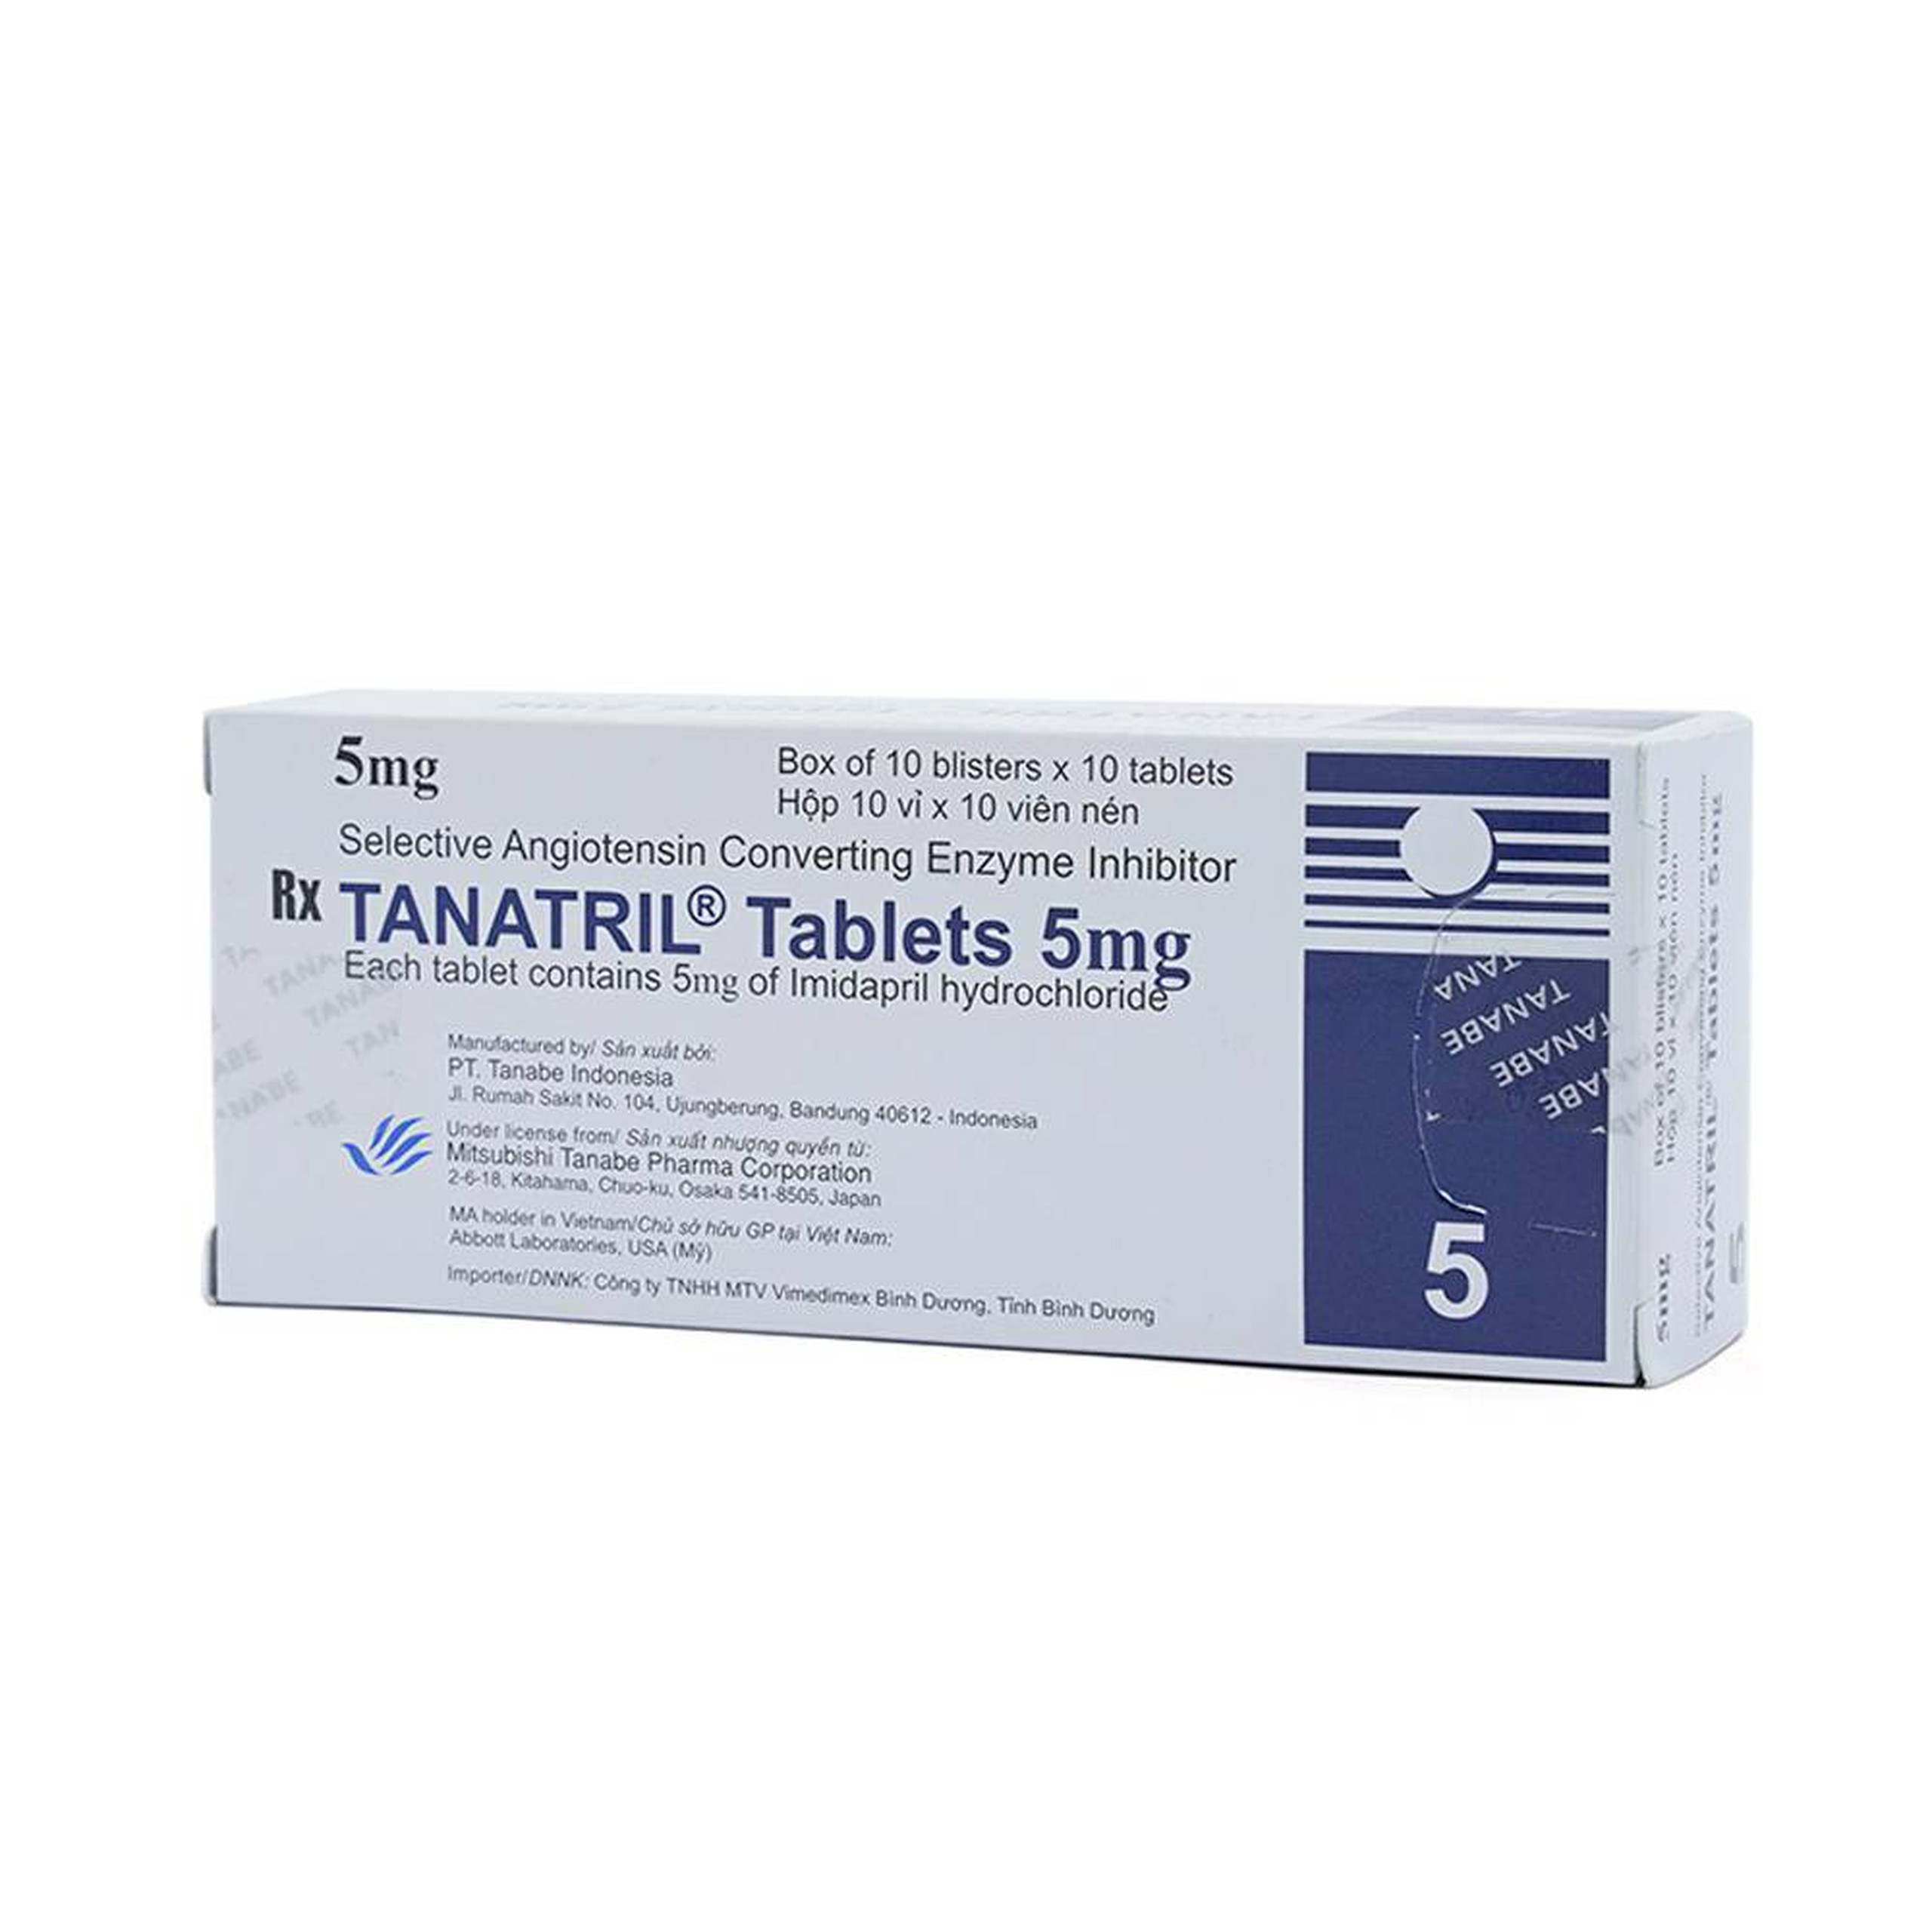 Thuốc Tanatril Tablets 5mg Tanabe điều trị tăng huyết áp vô căn (10 vỉ x 10 viên)